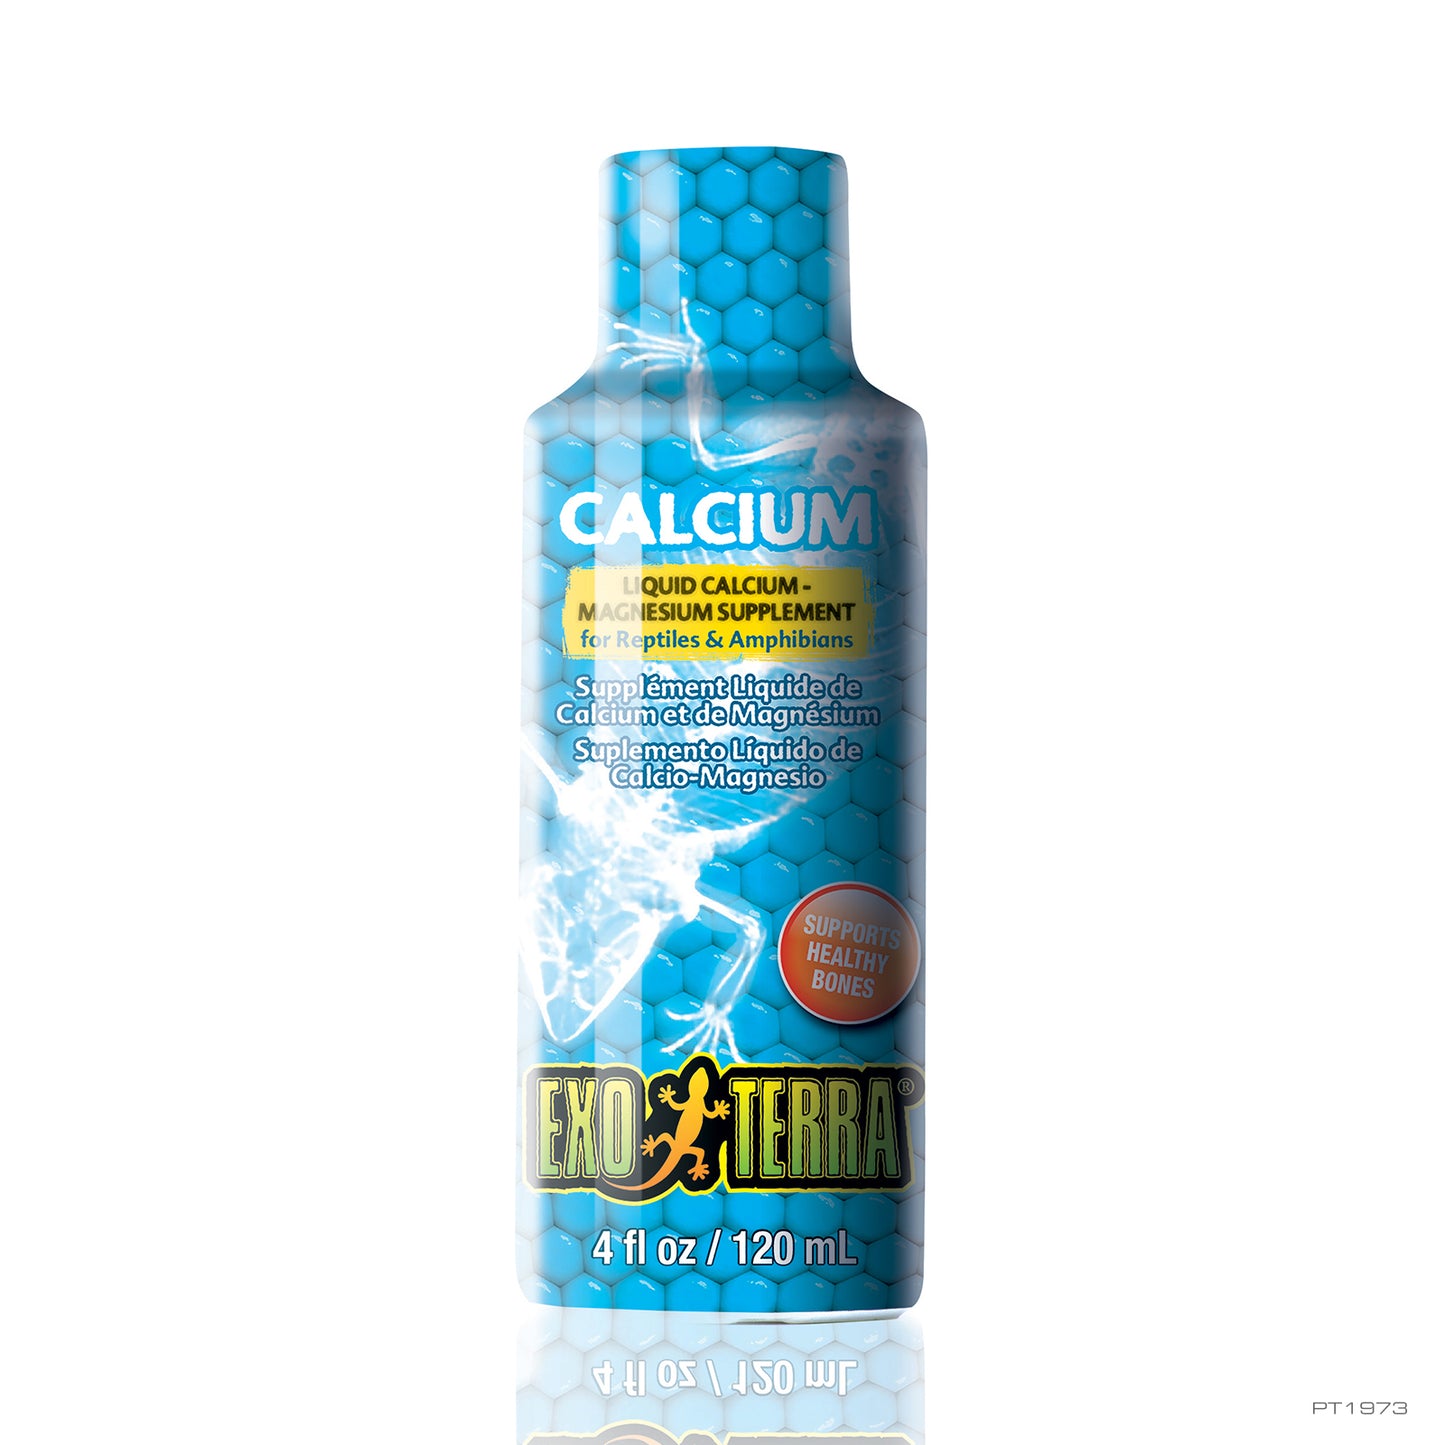 Exo Terra Calcium Liquid Calcium Magnesium Supplement - 120 ml